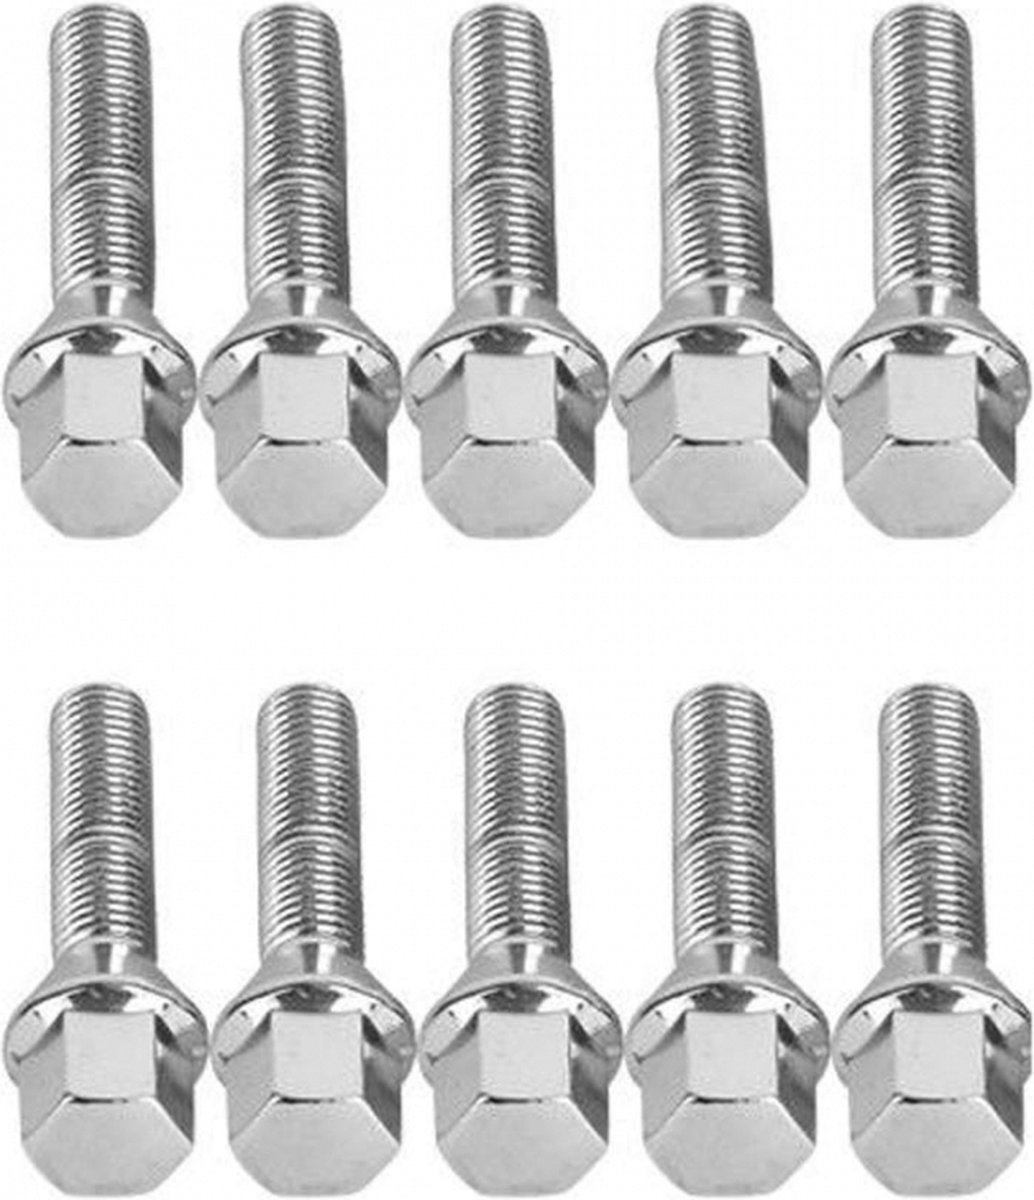 Verlengde conische wielbouten 55mm - M14x1.5 - Chroom - Set van 10 bouten / M14x1,5 / M14 x 1,5 / M14 x 1.5